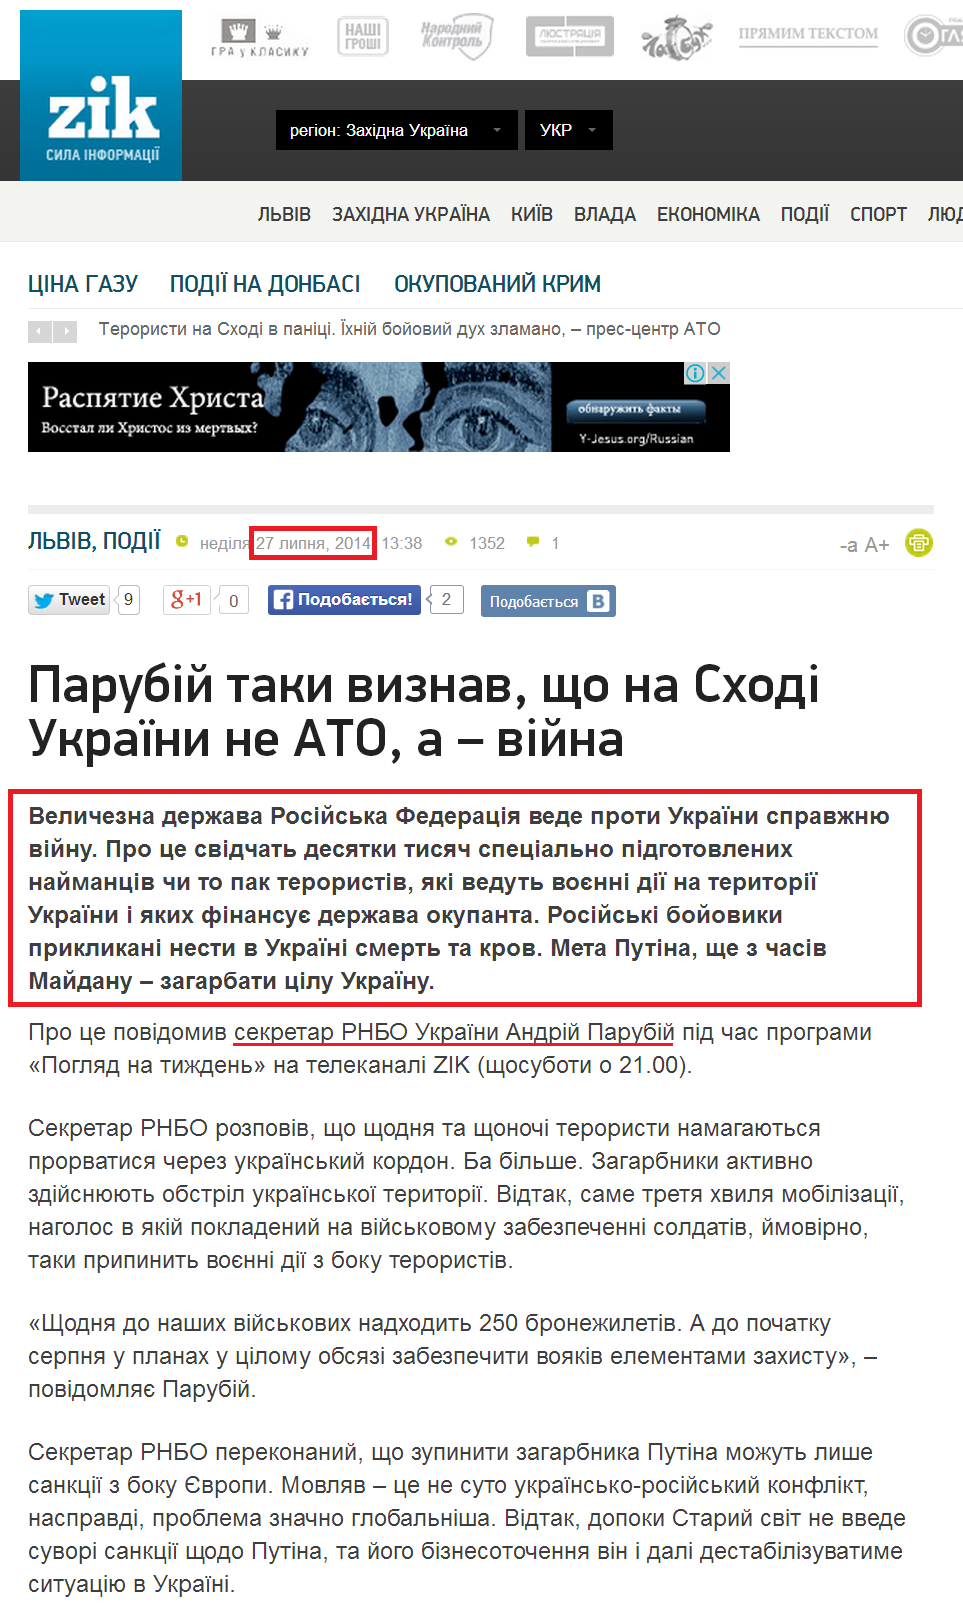 http://zik.ua/ua/news/2014/07/27/parubiy_taky_vyznav_shcho_na_shodi_ukrainy_ne_ato_a__viyna_509484